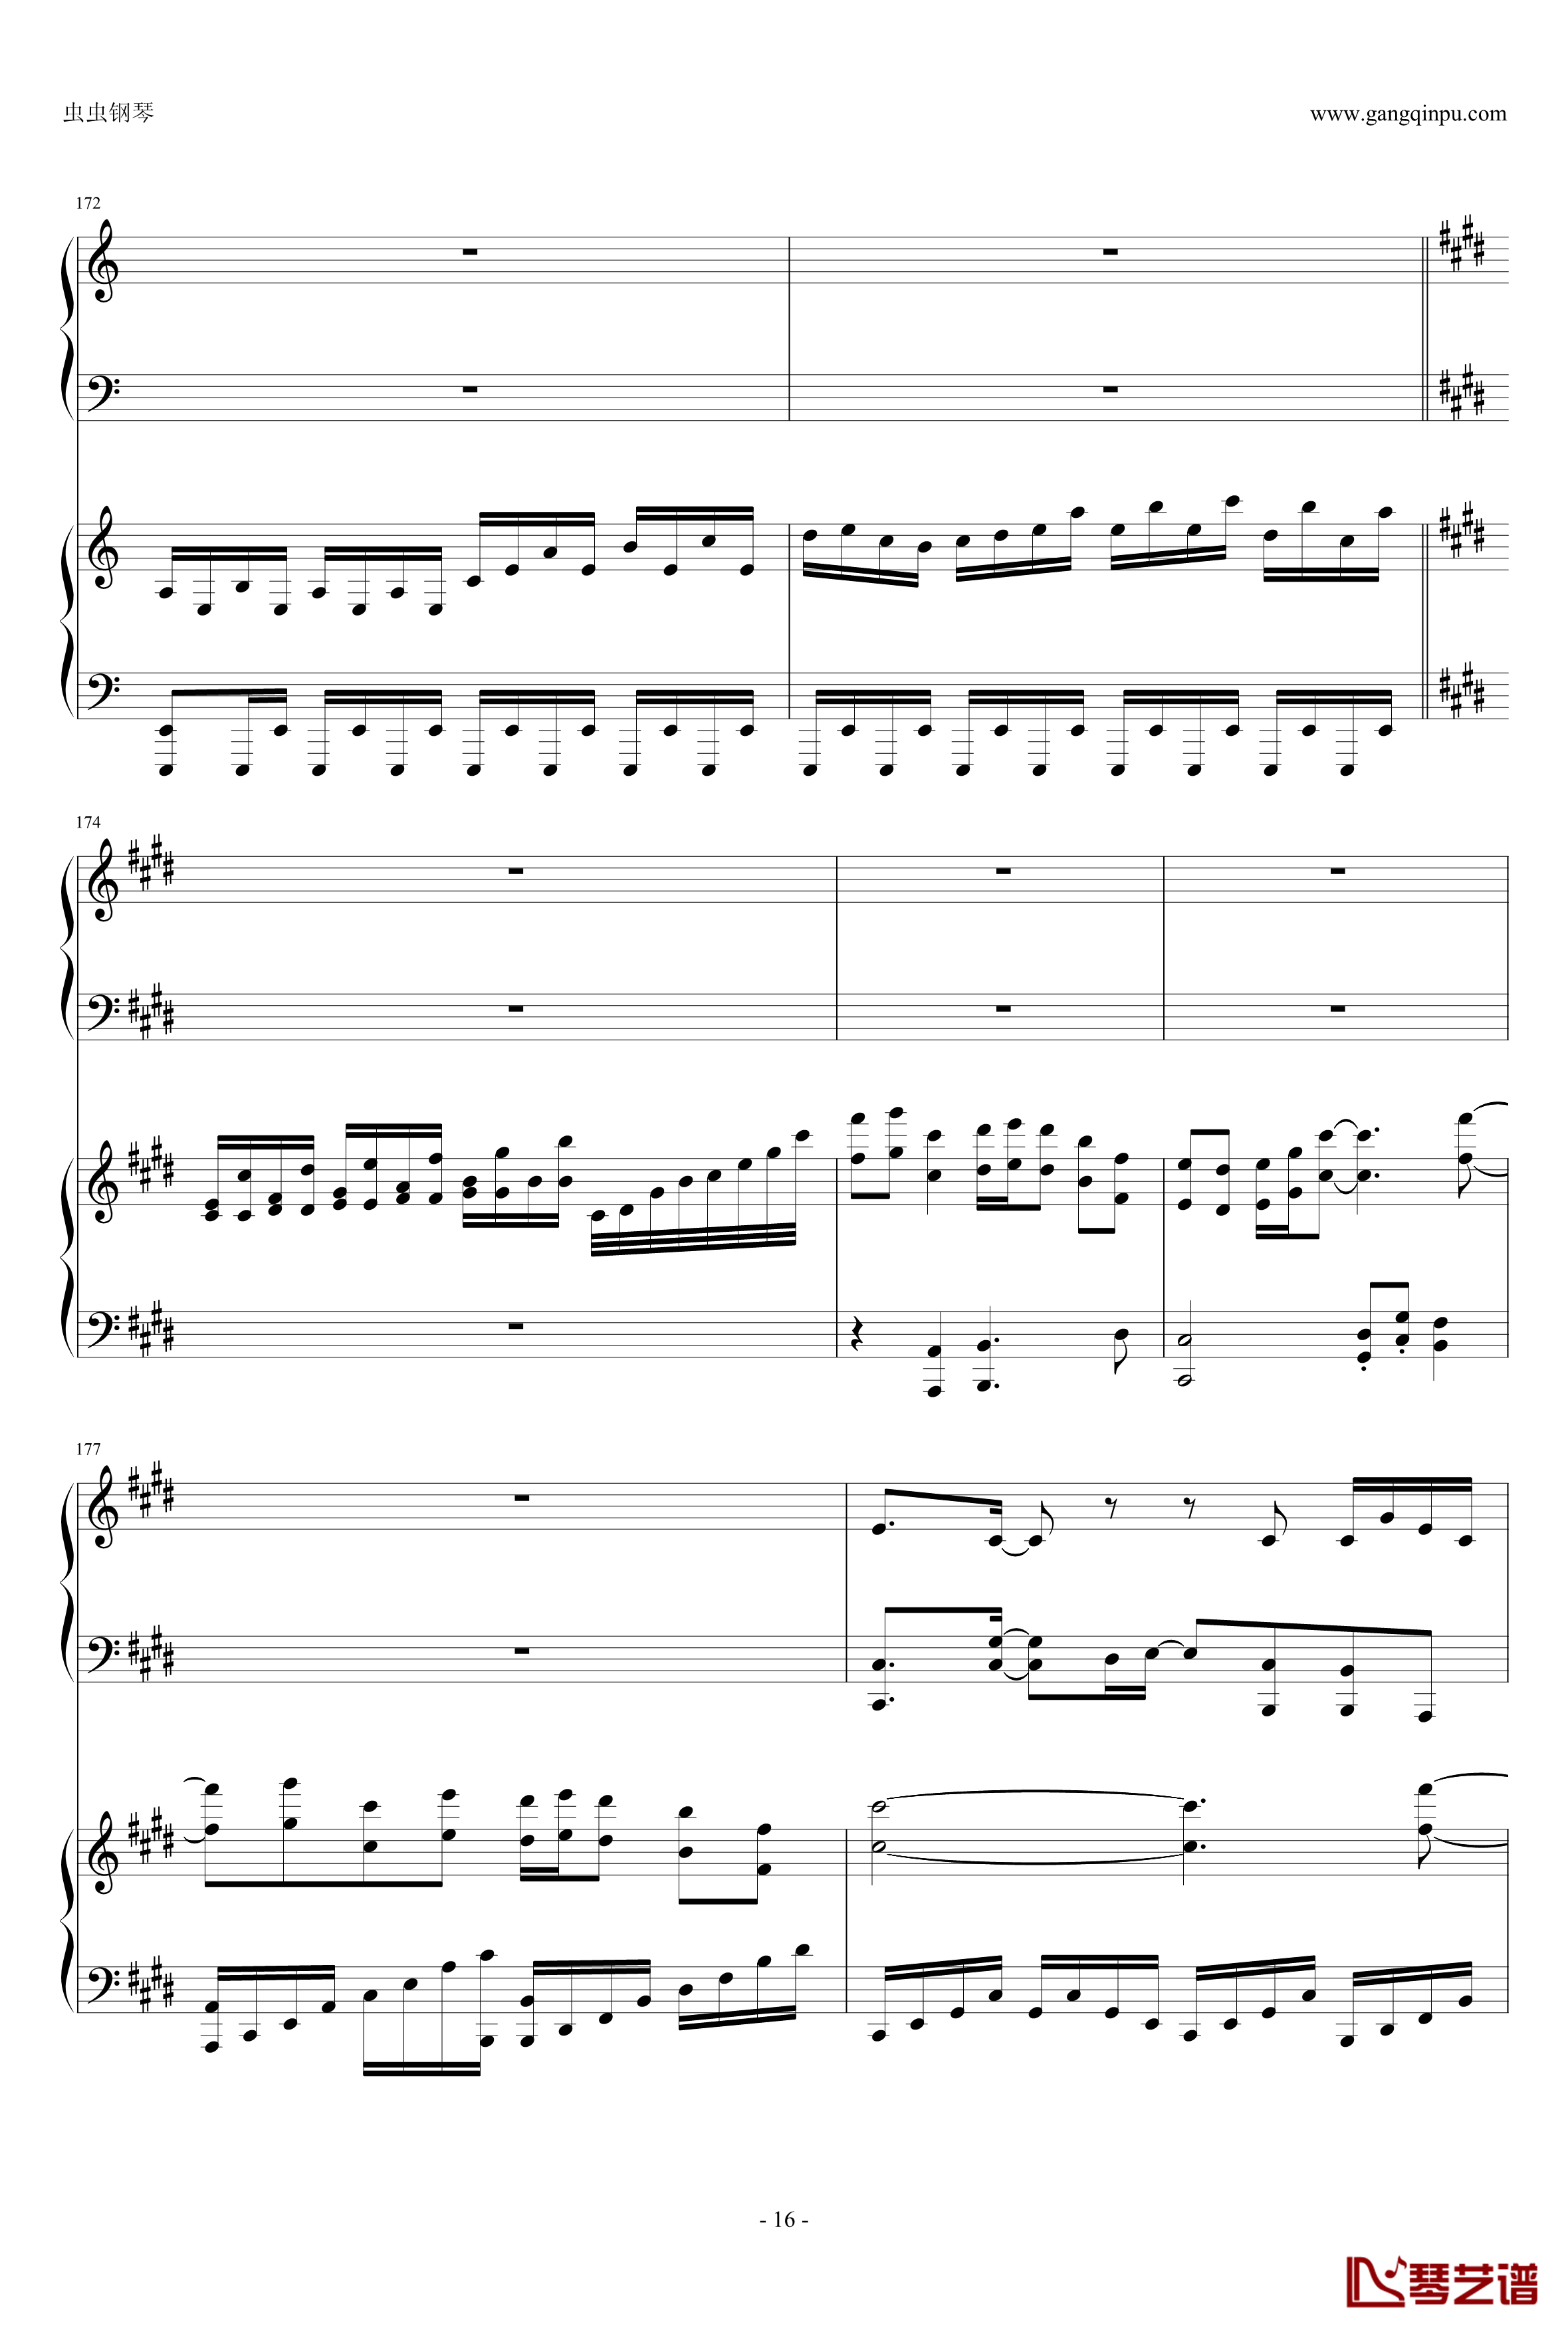 東方連奏曲II Pianoforte钢琴谱-第一部分-东方project16